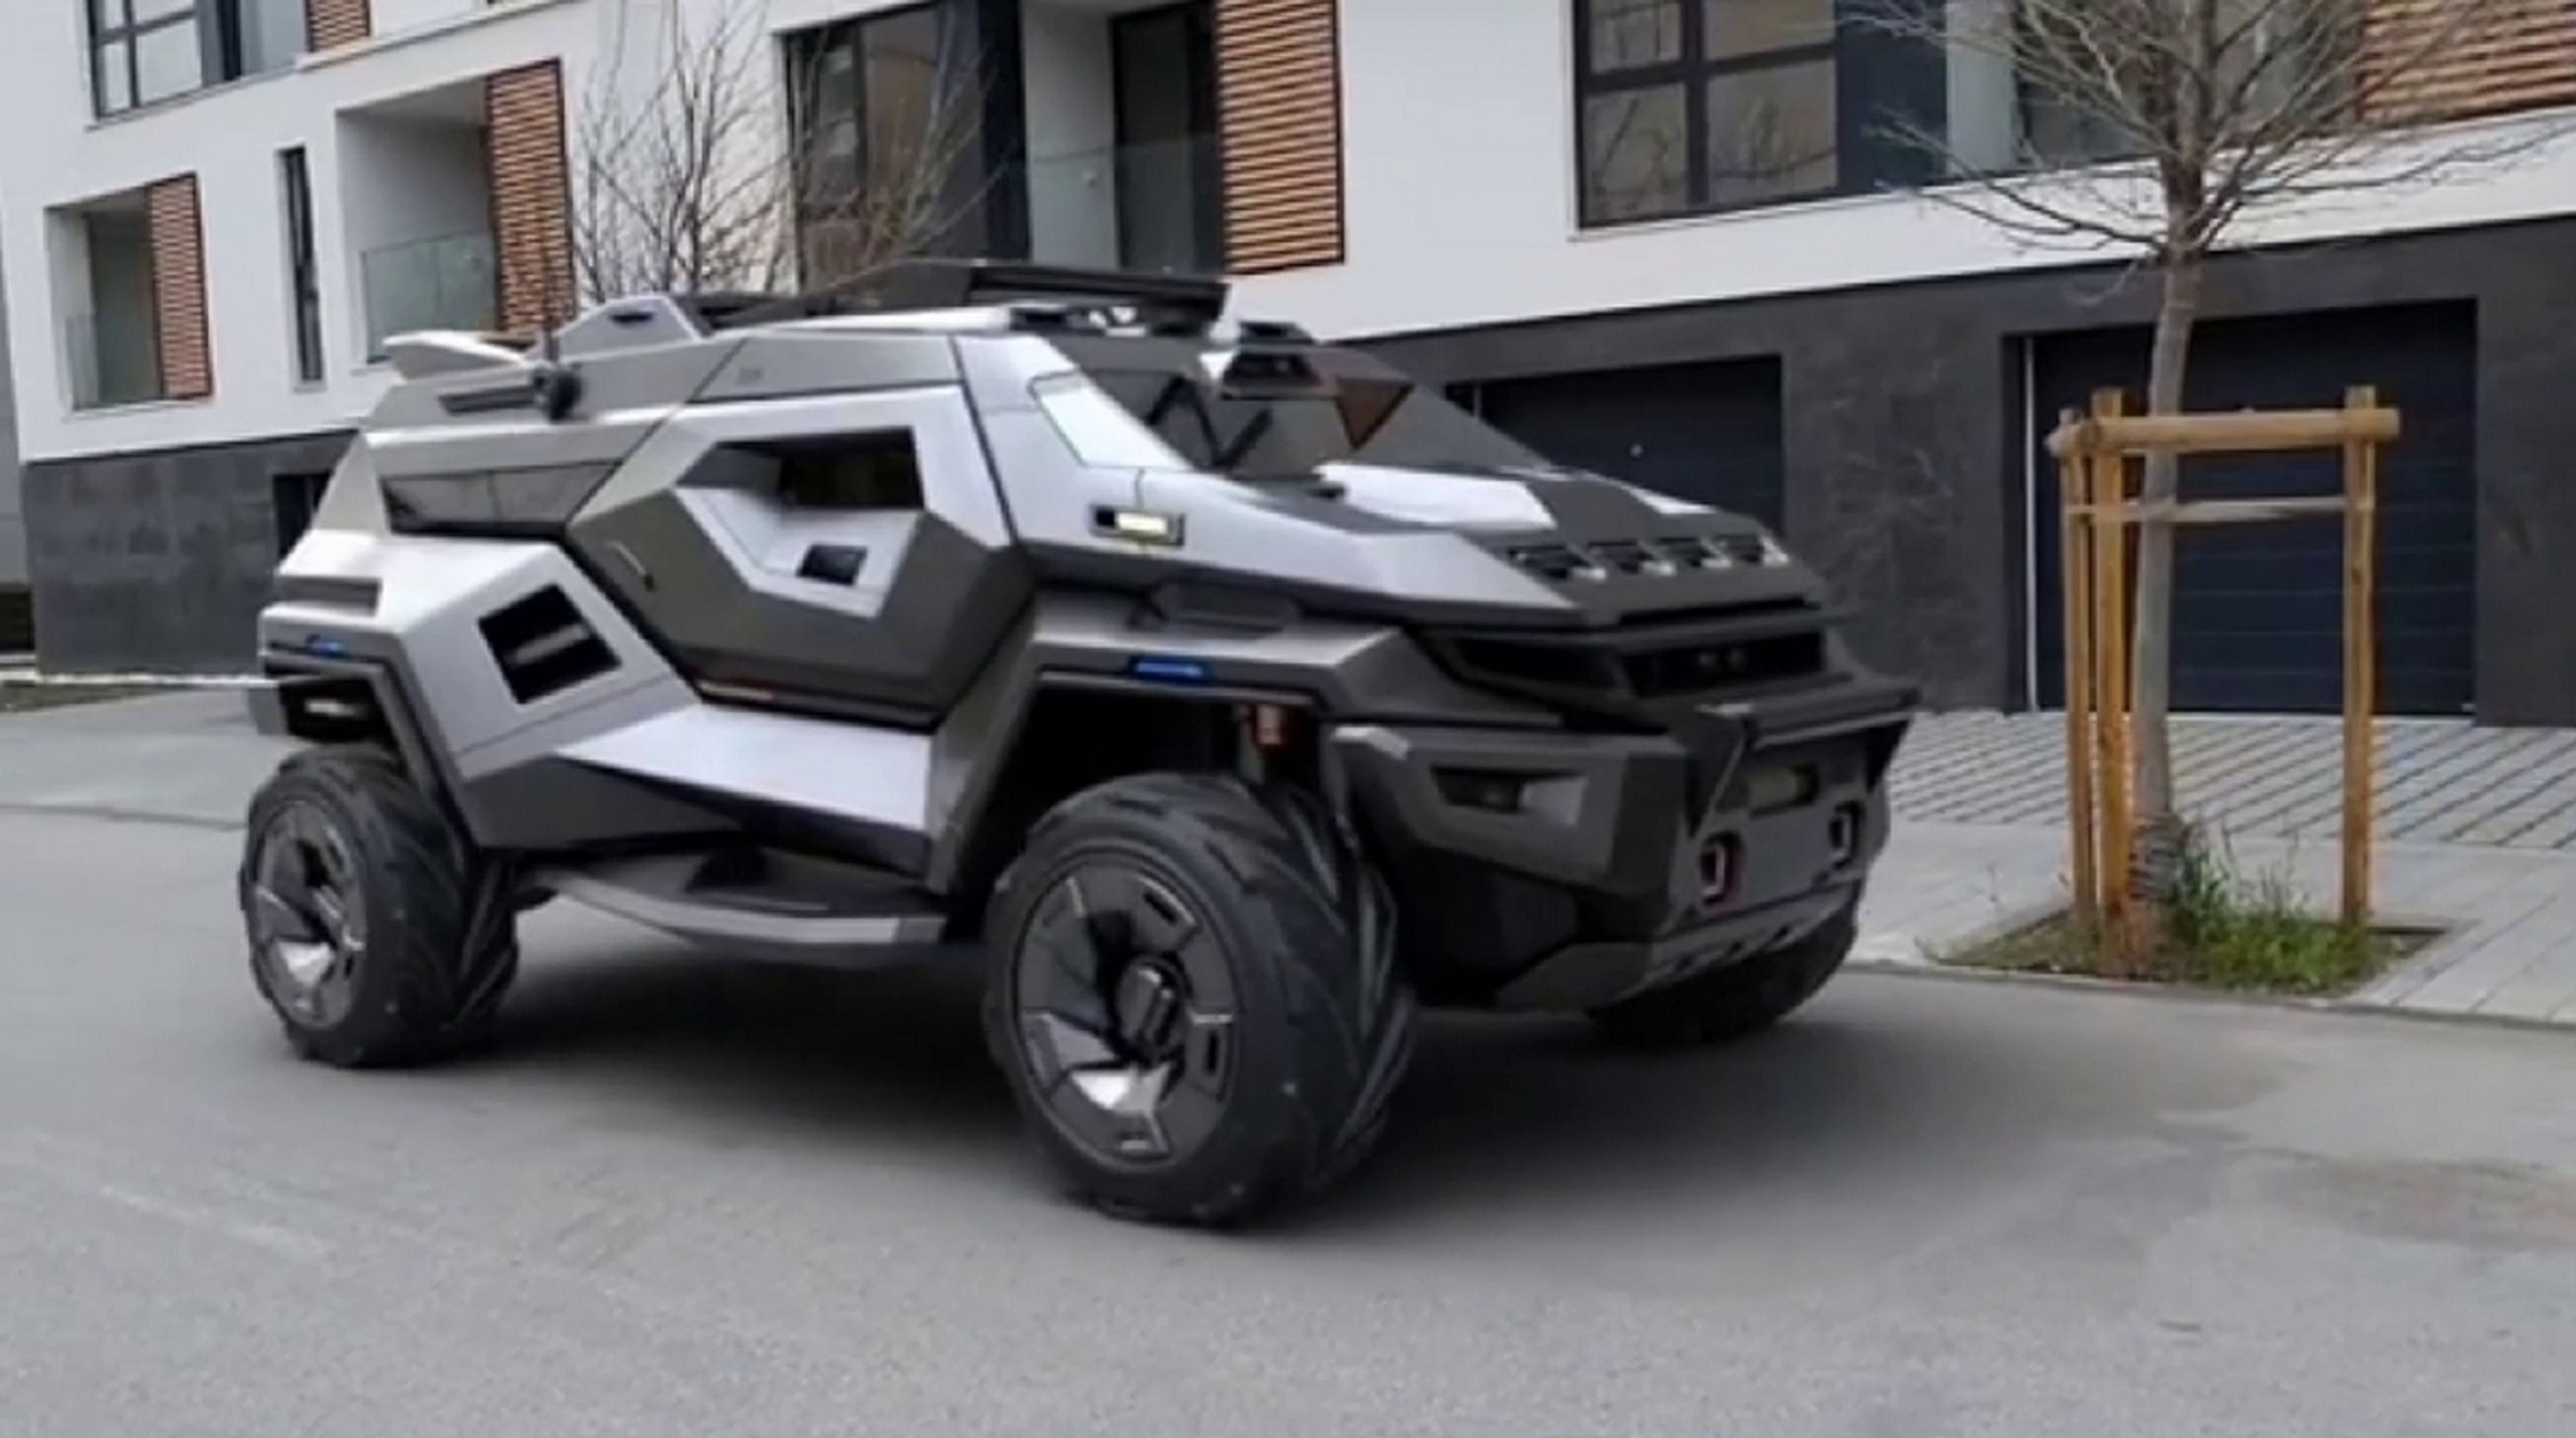 El Armortruck se muestra en vídeo, hace que el Cybertuck de Tesla parezca un coche de juguete